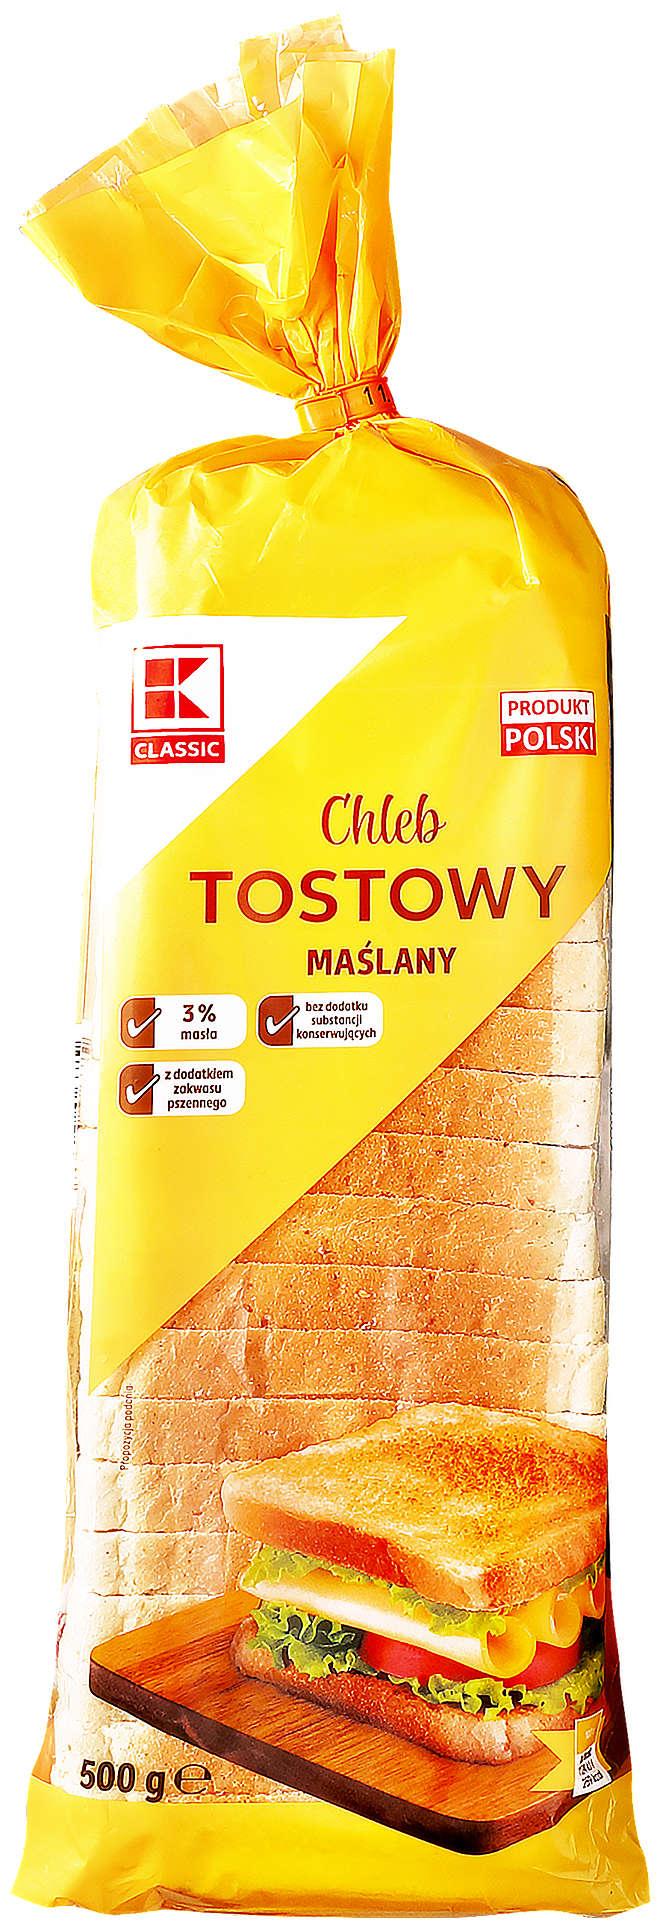 Zdjęcie oferty K-Classic Chleb tostowy, maślany